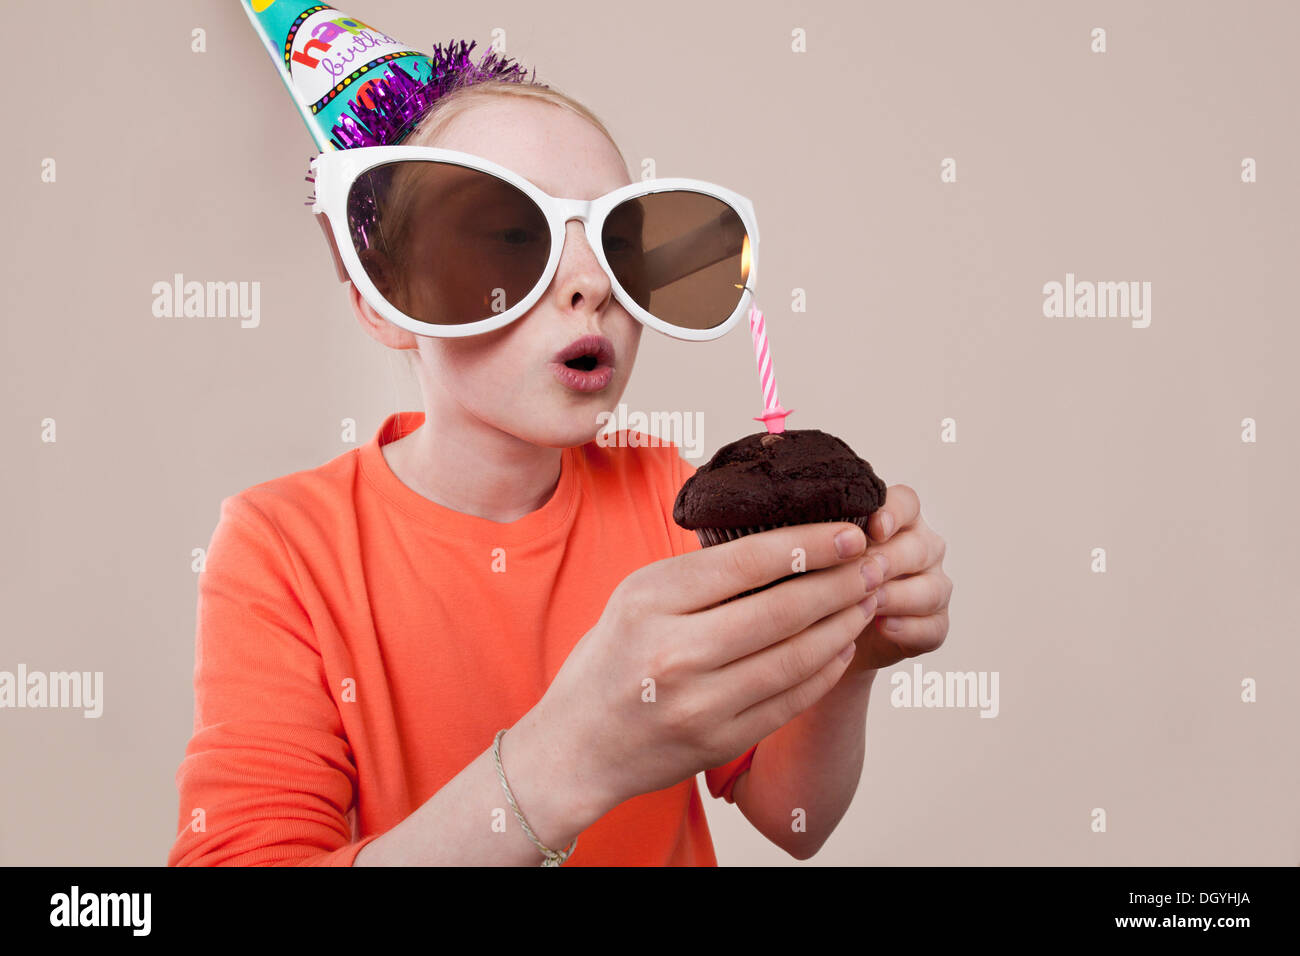 Ein Mädchen trägt Neuheit Sonnenbrillen und Partyhut Geburtstag Kerze ausblasen Stockfoto